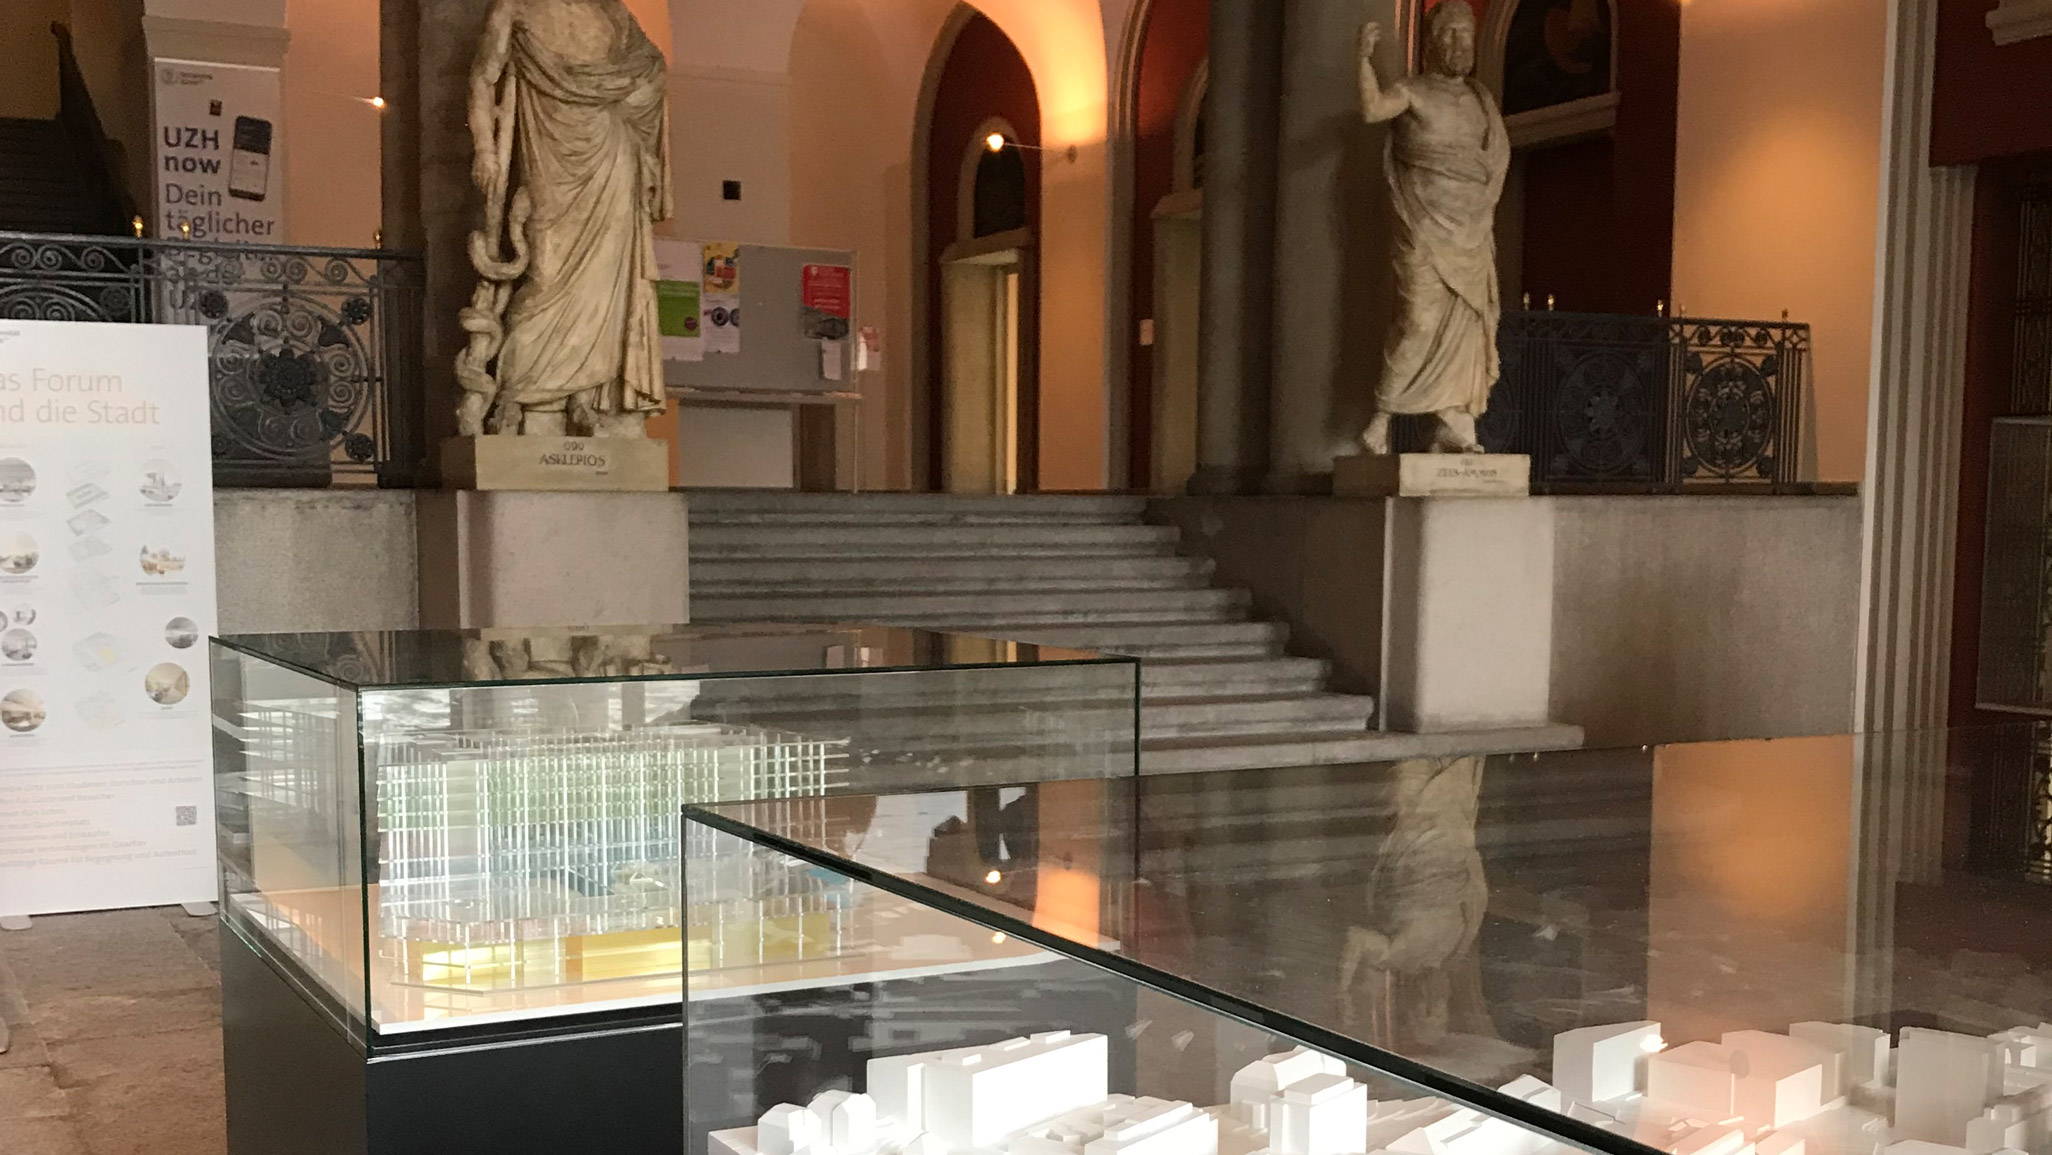 Am Eingang Künstlergasse des UZH Hauptgebäudes stehen neu zwei Modelle und eine Stele über das FORUM UZH.